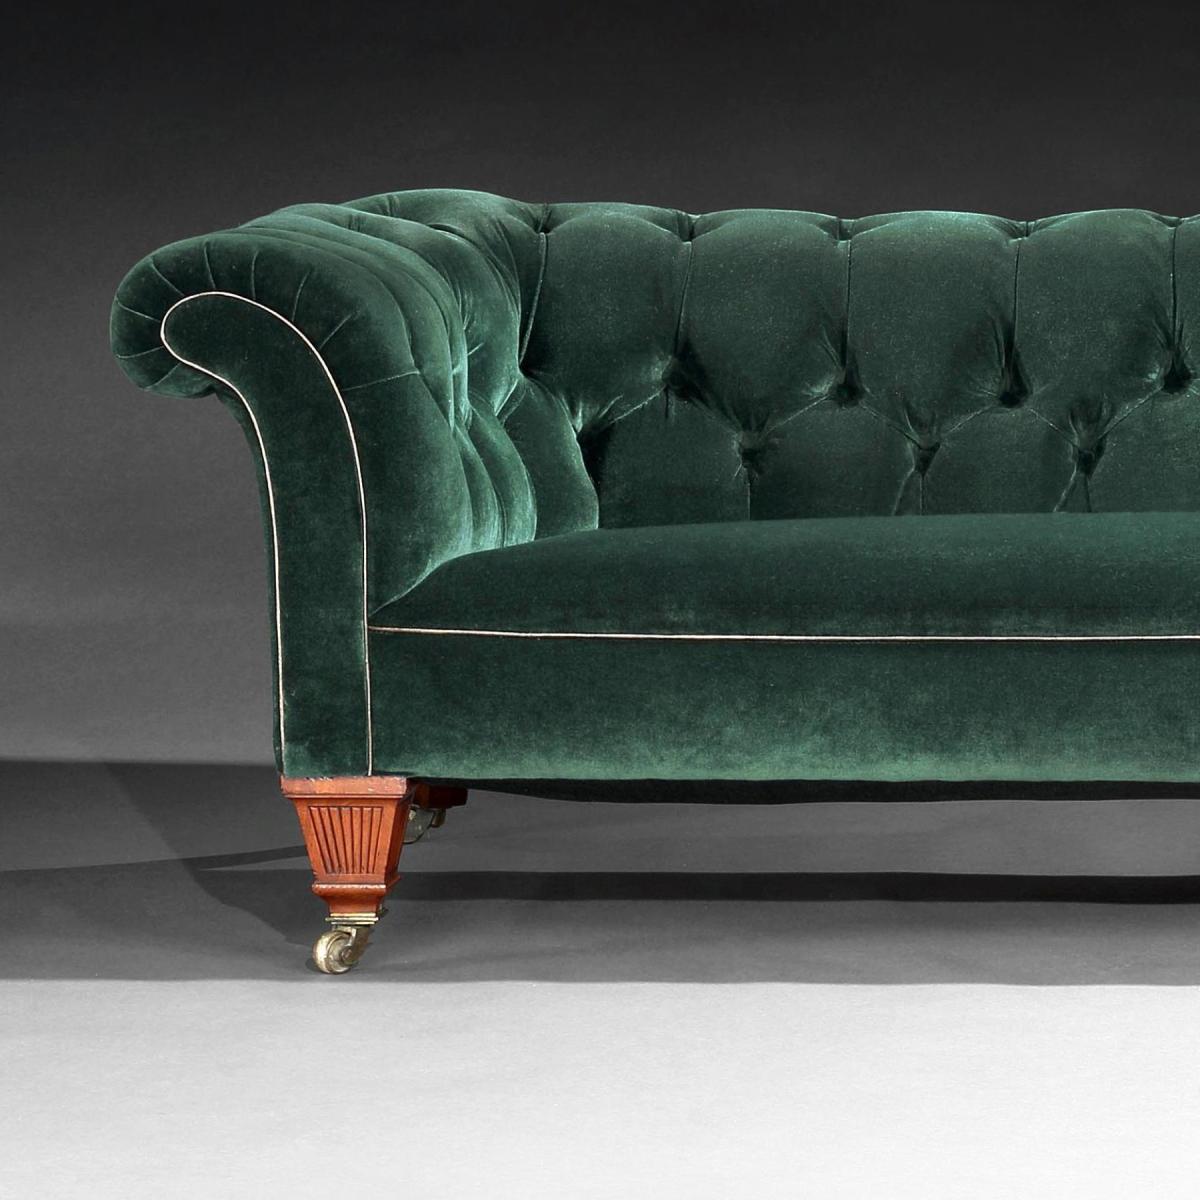 Victorian Chesterfield Sofa Upholstered in a Green Velvet